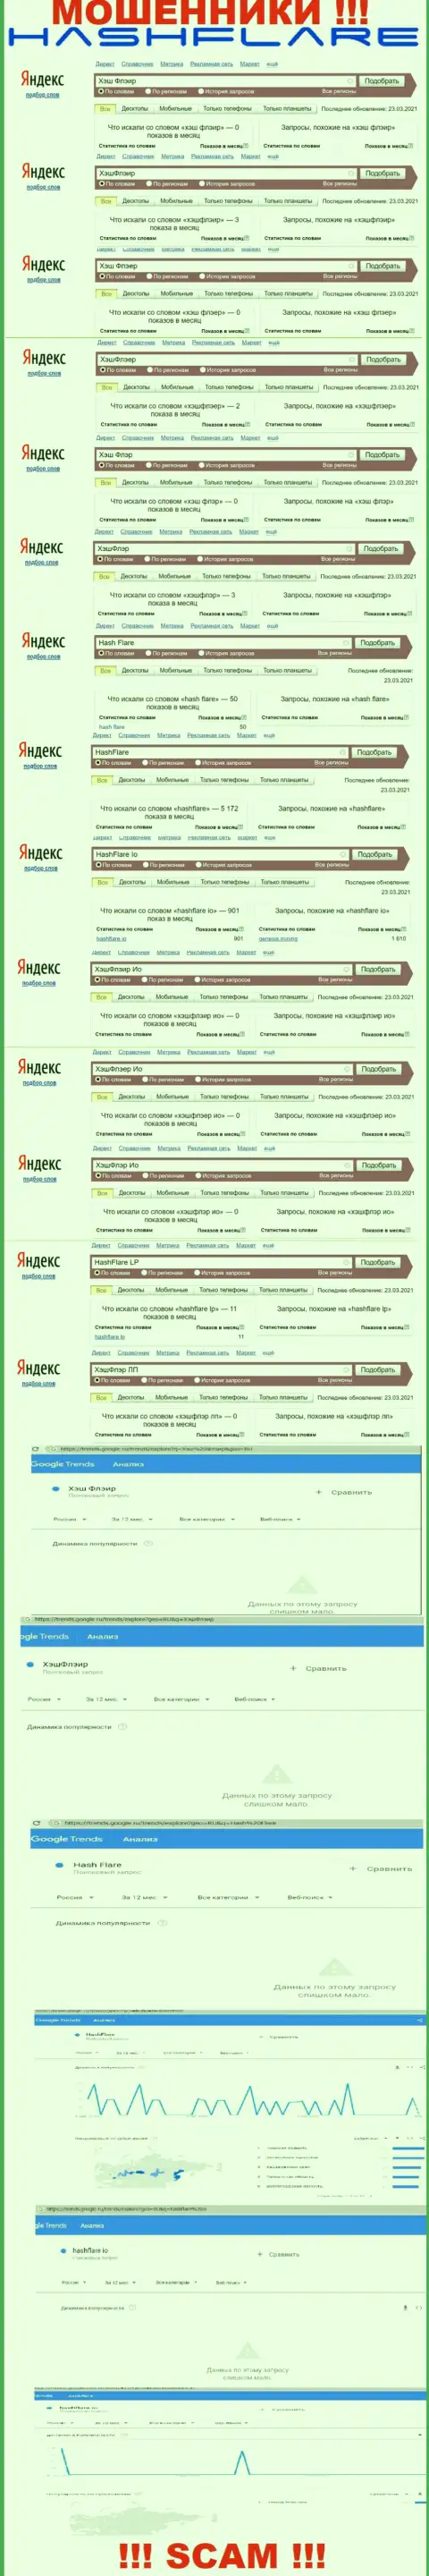 Количество запросов в поисковиках интернет сети по бренду мошенников HashFlare Io